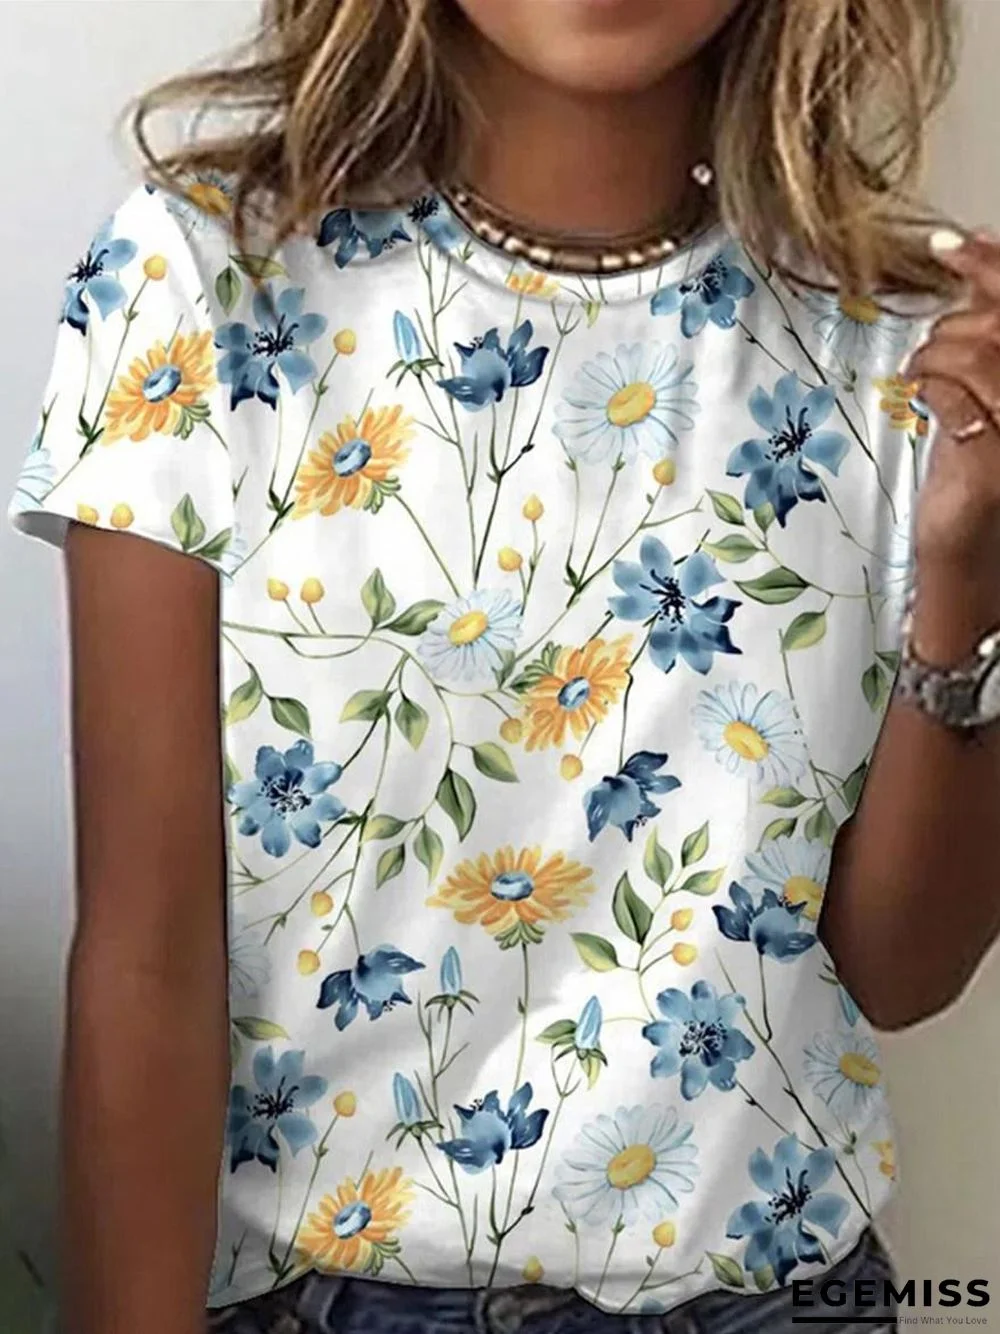 Fashion Flower Print Short Sleeve T-Shirt | EGEMISS